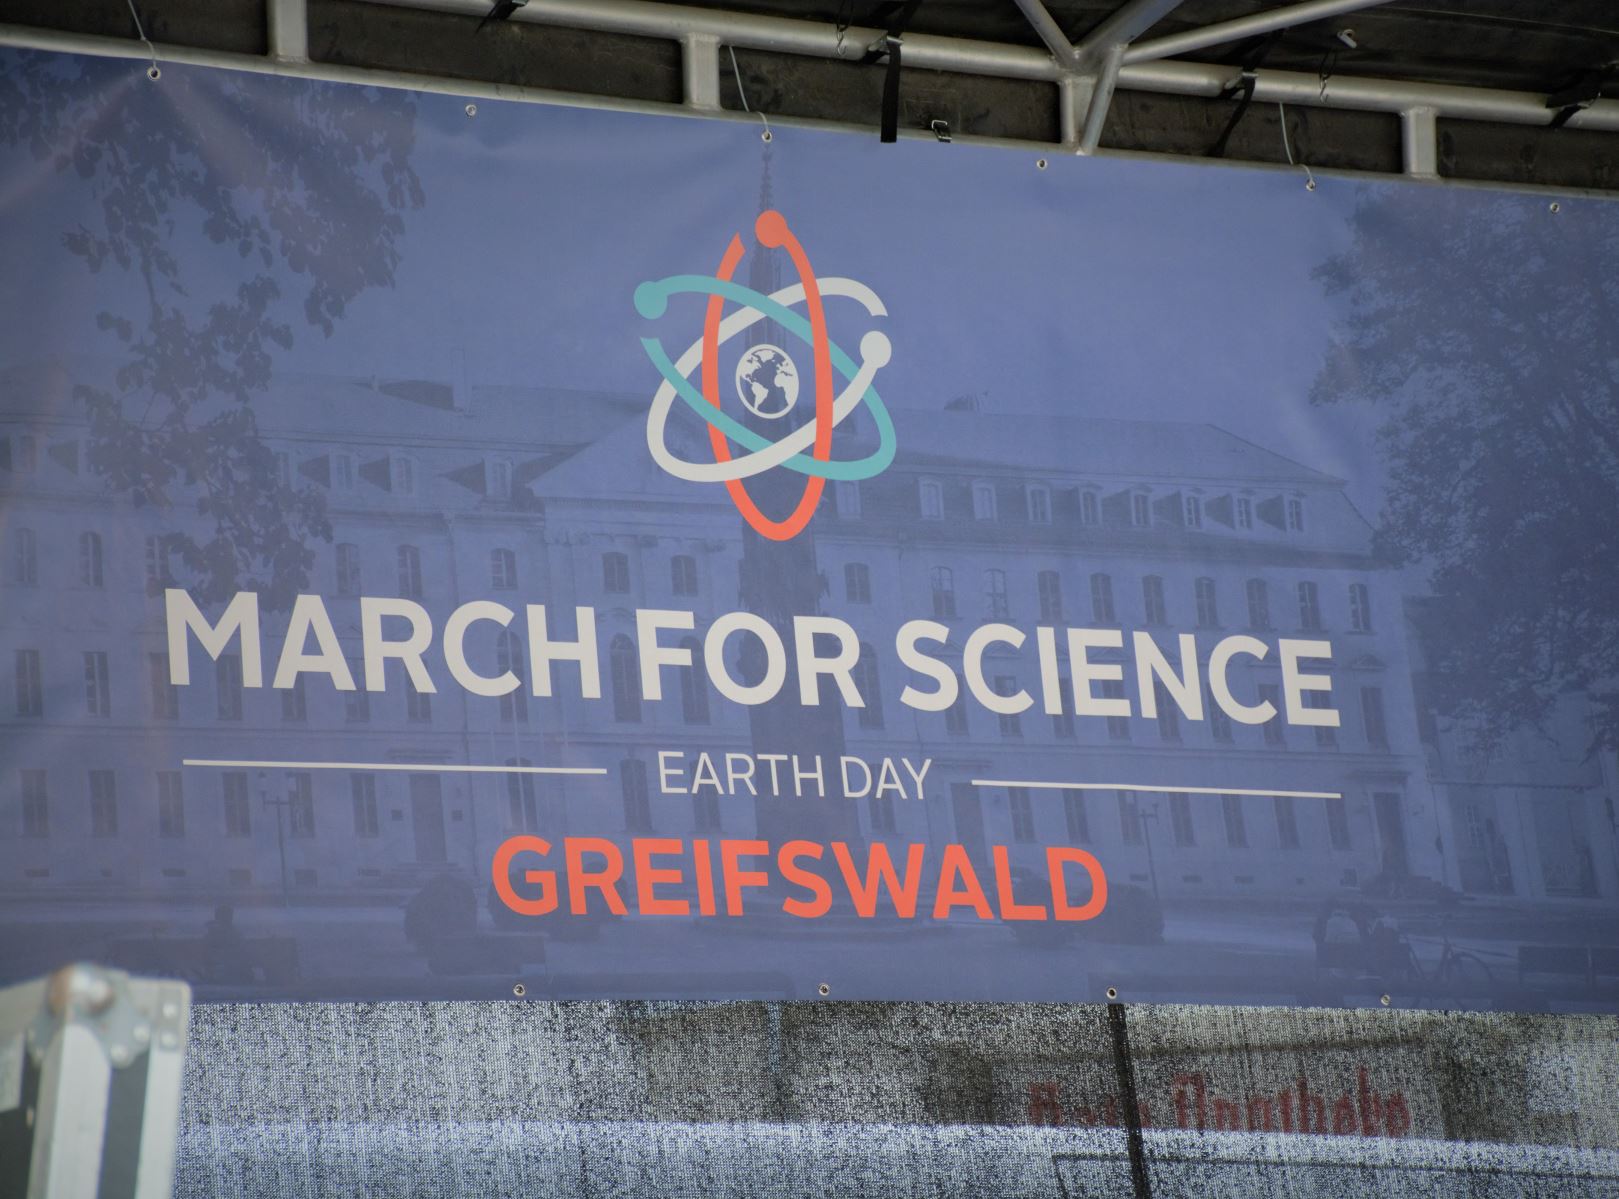 Wissenschaftler aller Länder vereinigt eucht! – March for Science in Greifswald